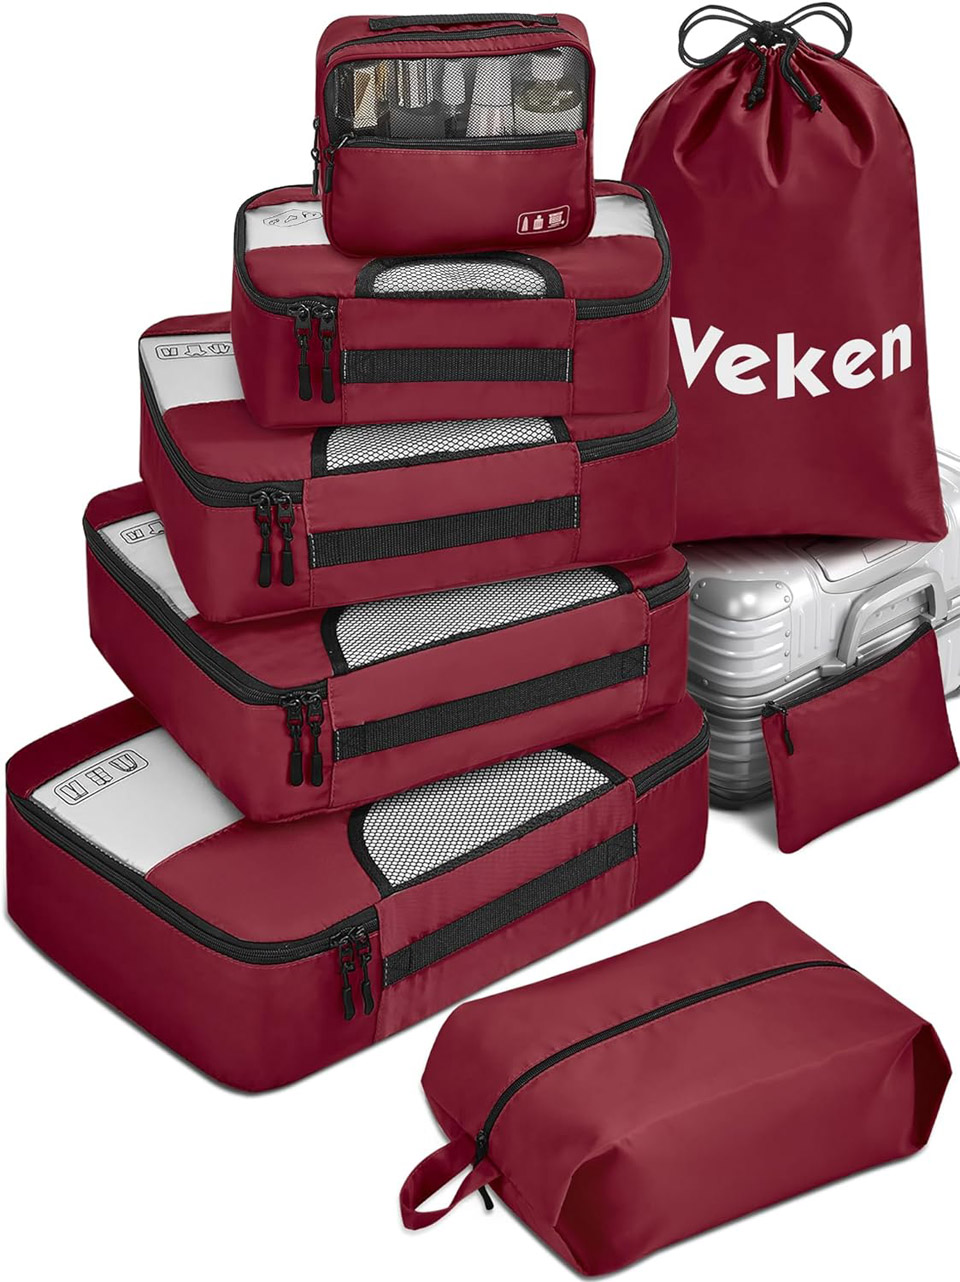 Veken 8 Set Packing Cubes For Travel